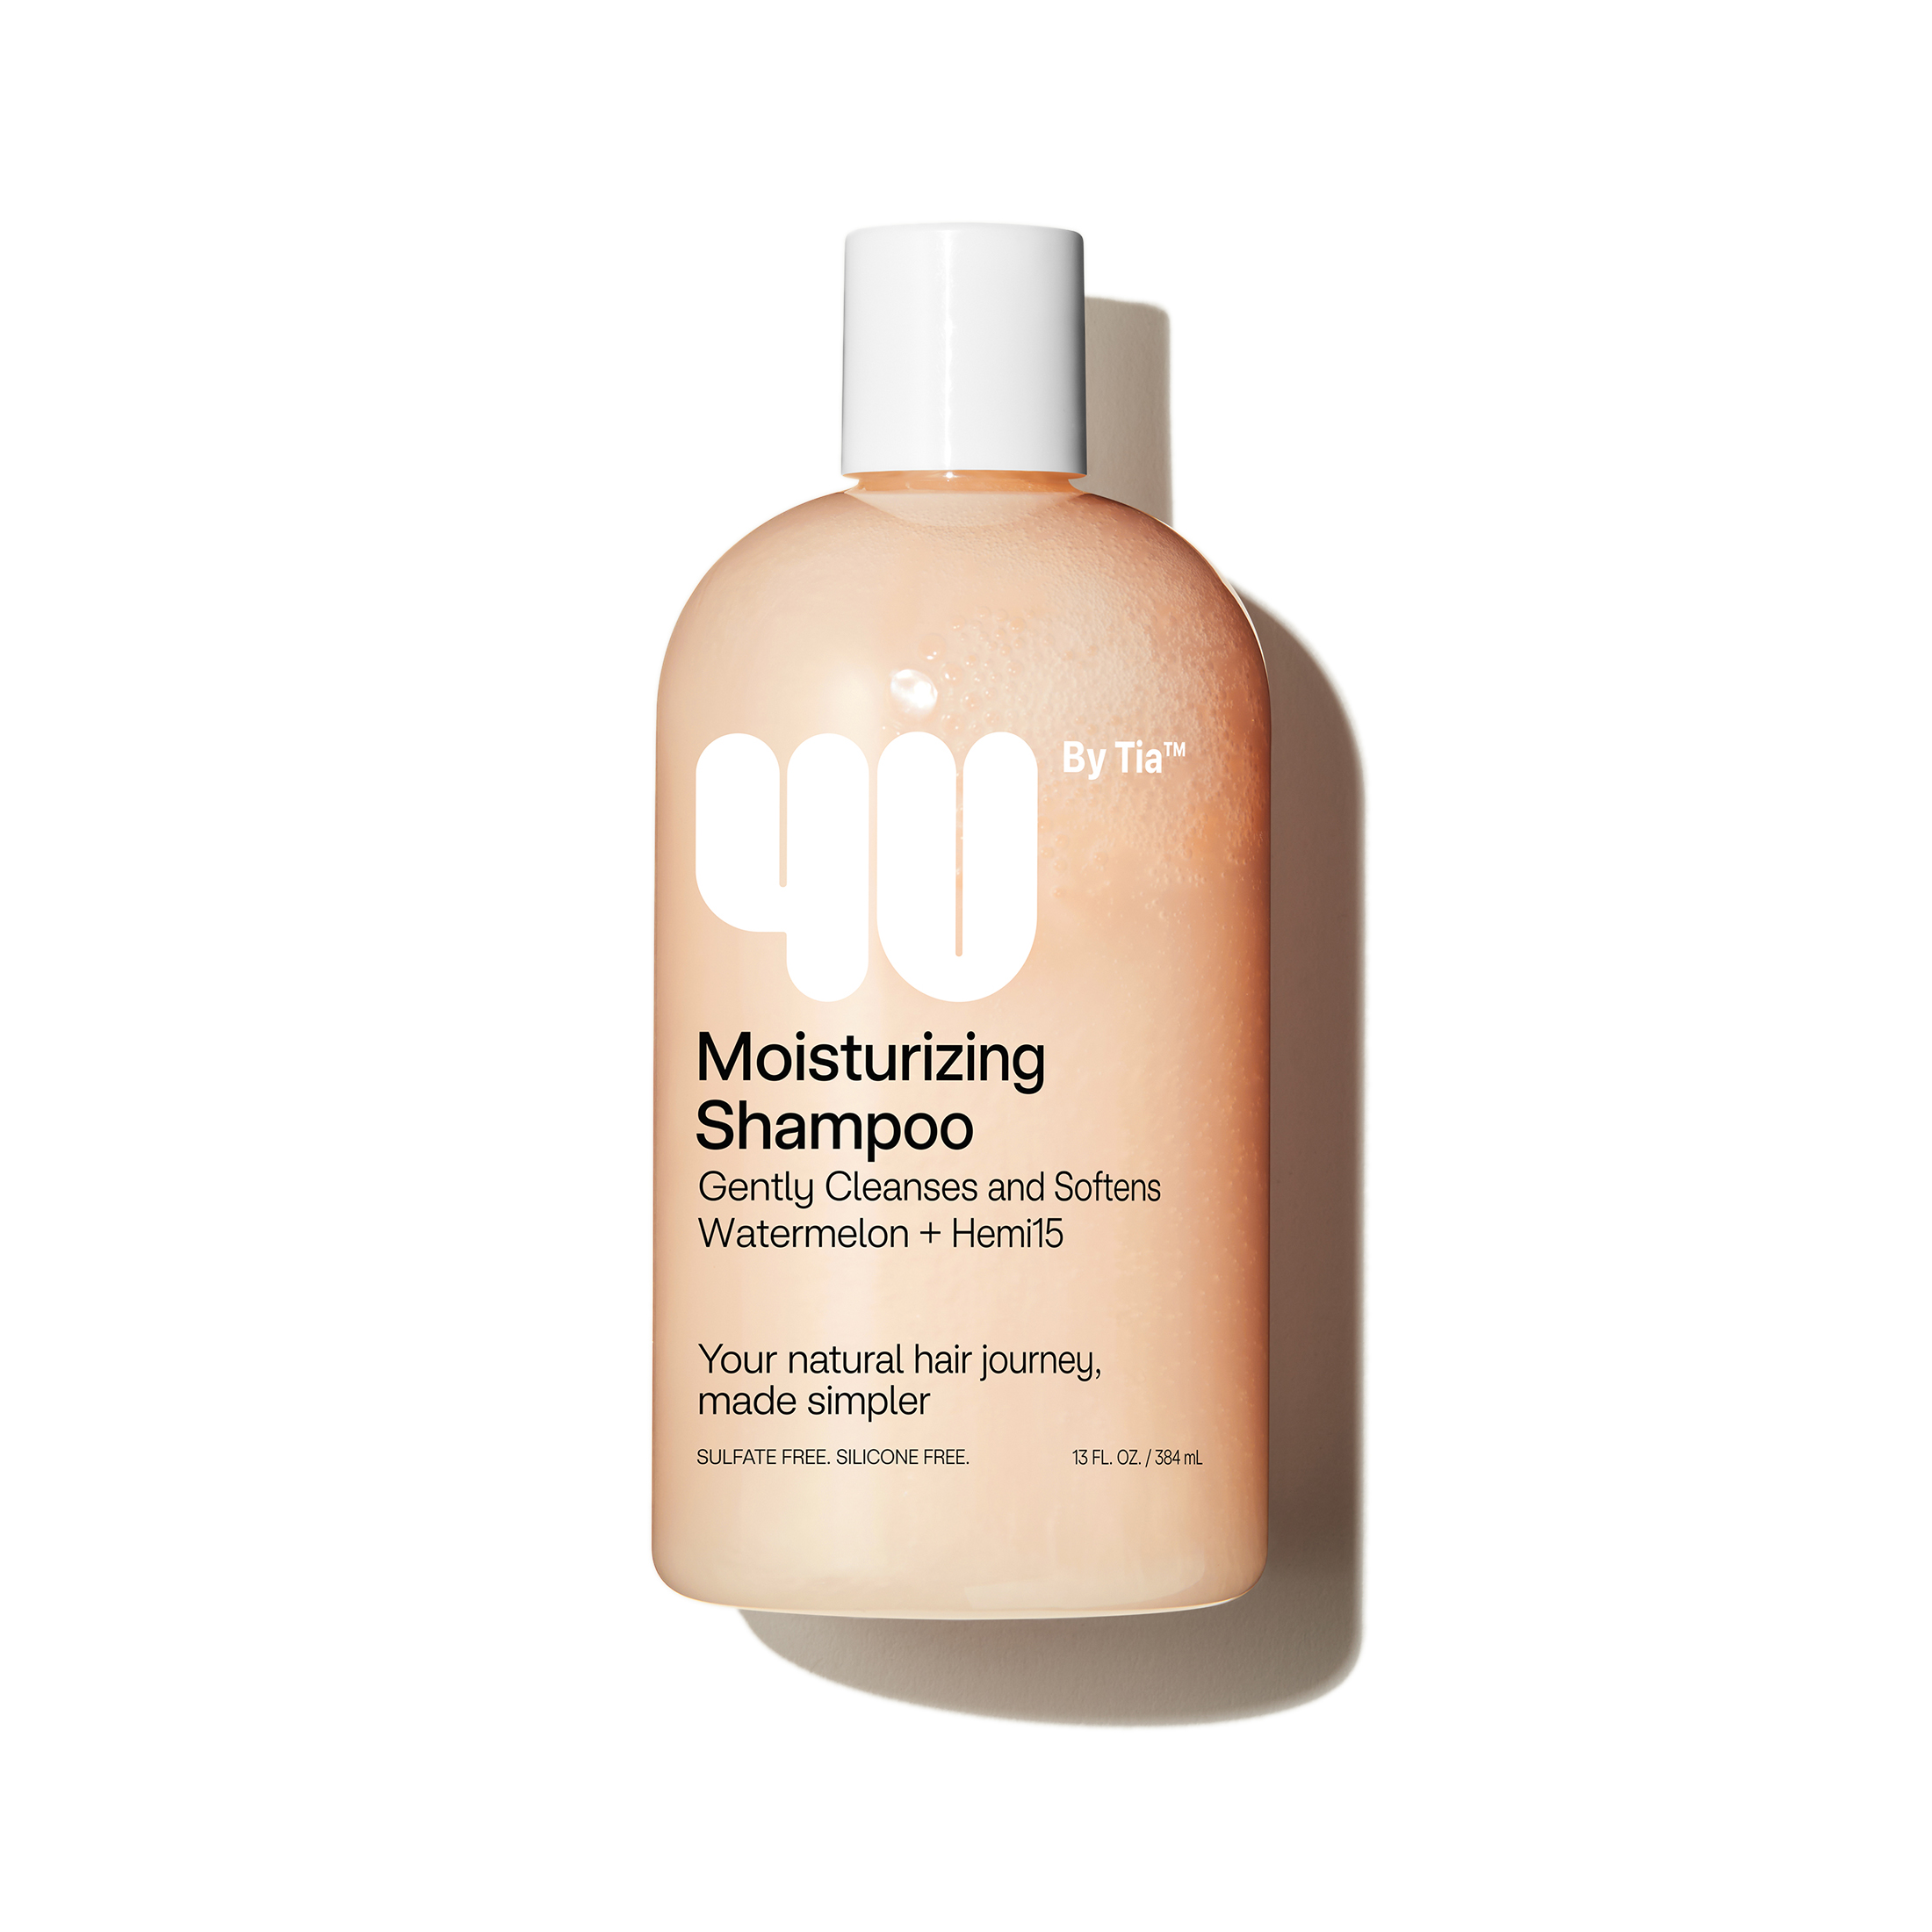 4U by Tia Moisturizing Shampoo with Watermelon and Hemi15, 13 fl oz - image 1 of 10